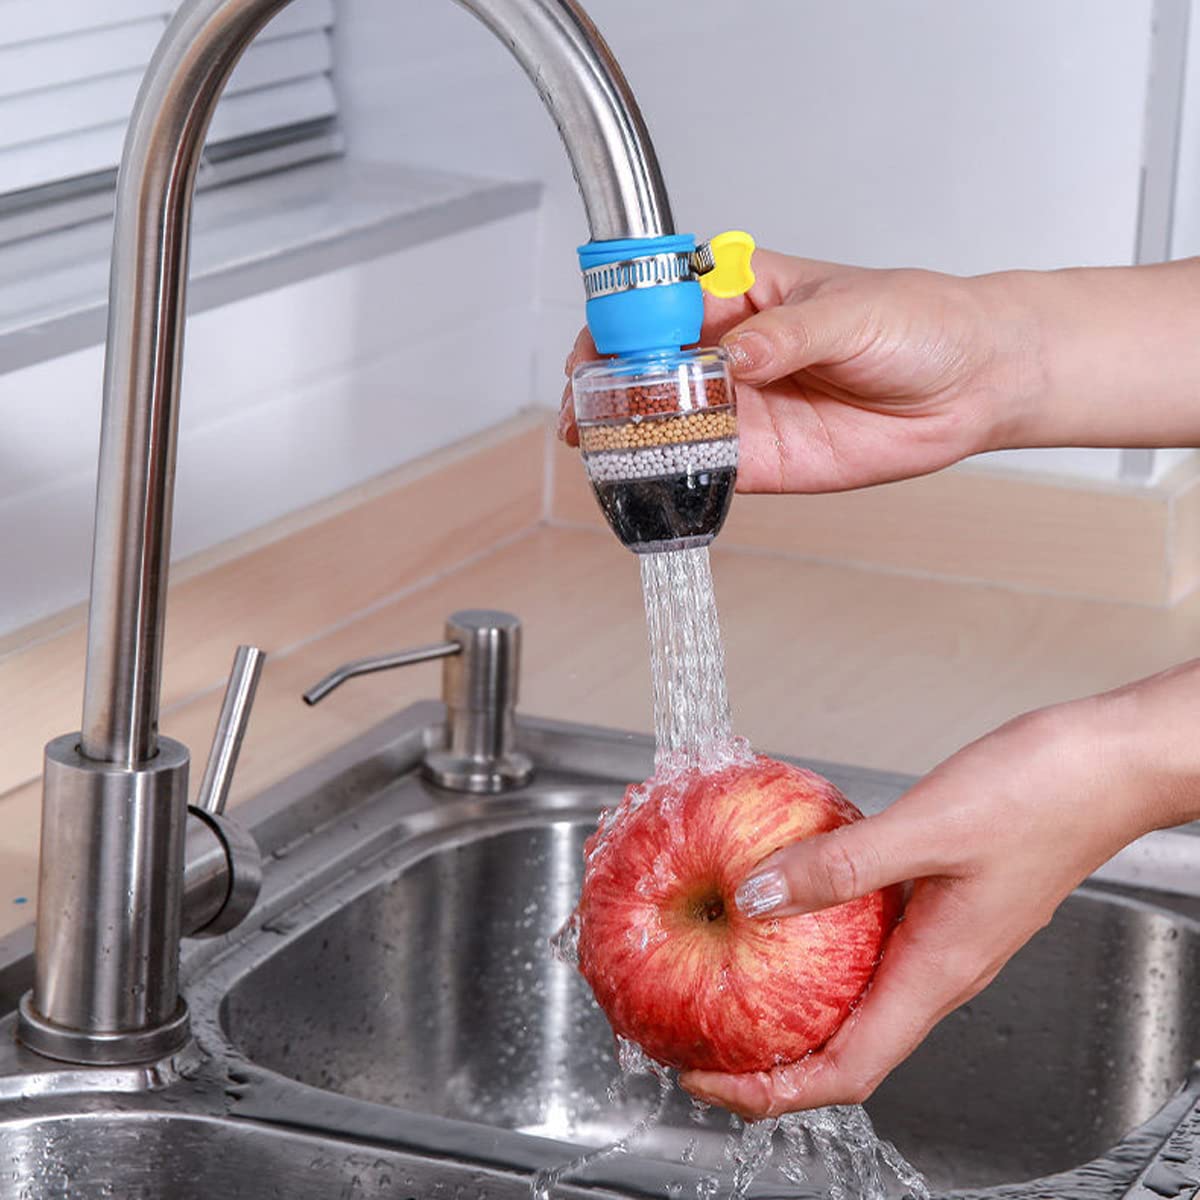 Filtro Universale Pro - Purifica la tua acqua con Installazione Semplice e Rapida!